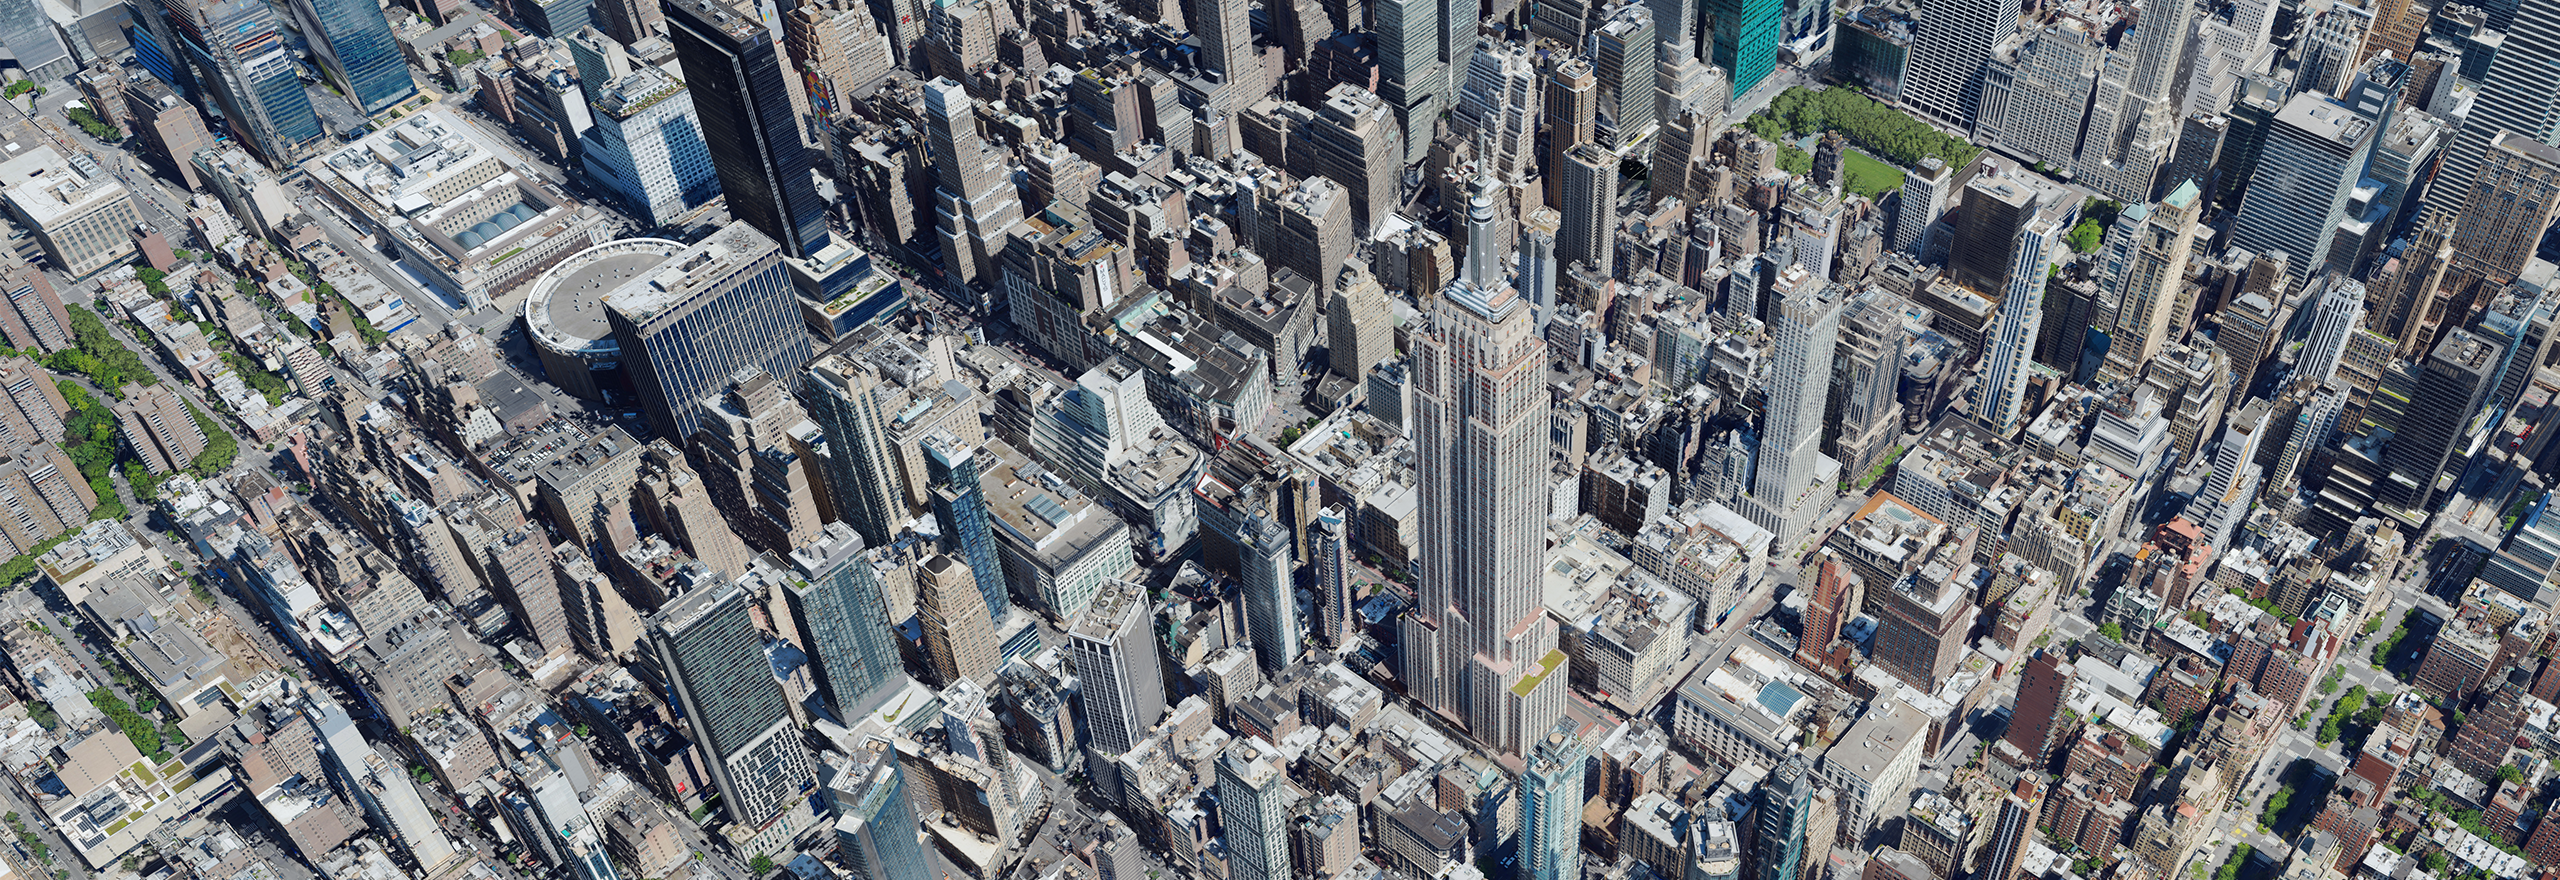 Dados de malha aérea em 3D de alta resolução da cidade de Nova York